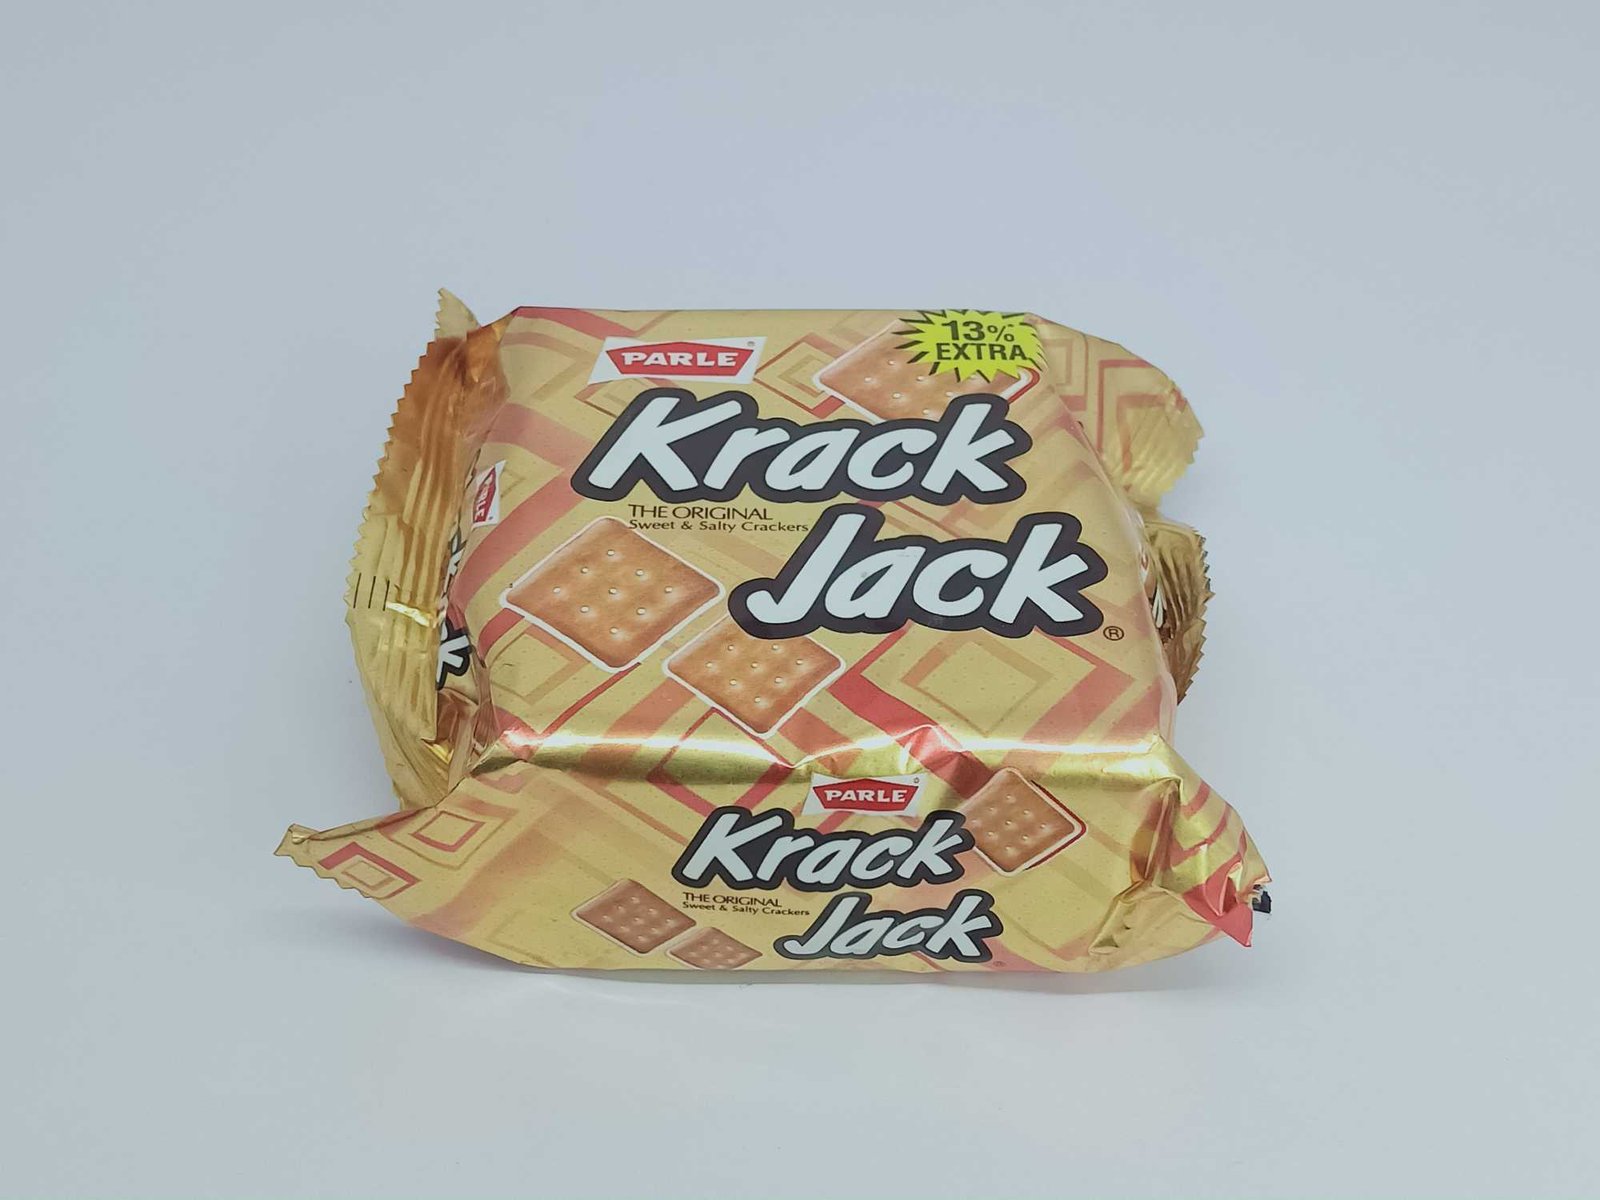 Parle Krack Jack the Original Sweet and Salty Crackers, 75.6 gram